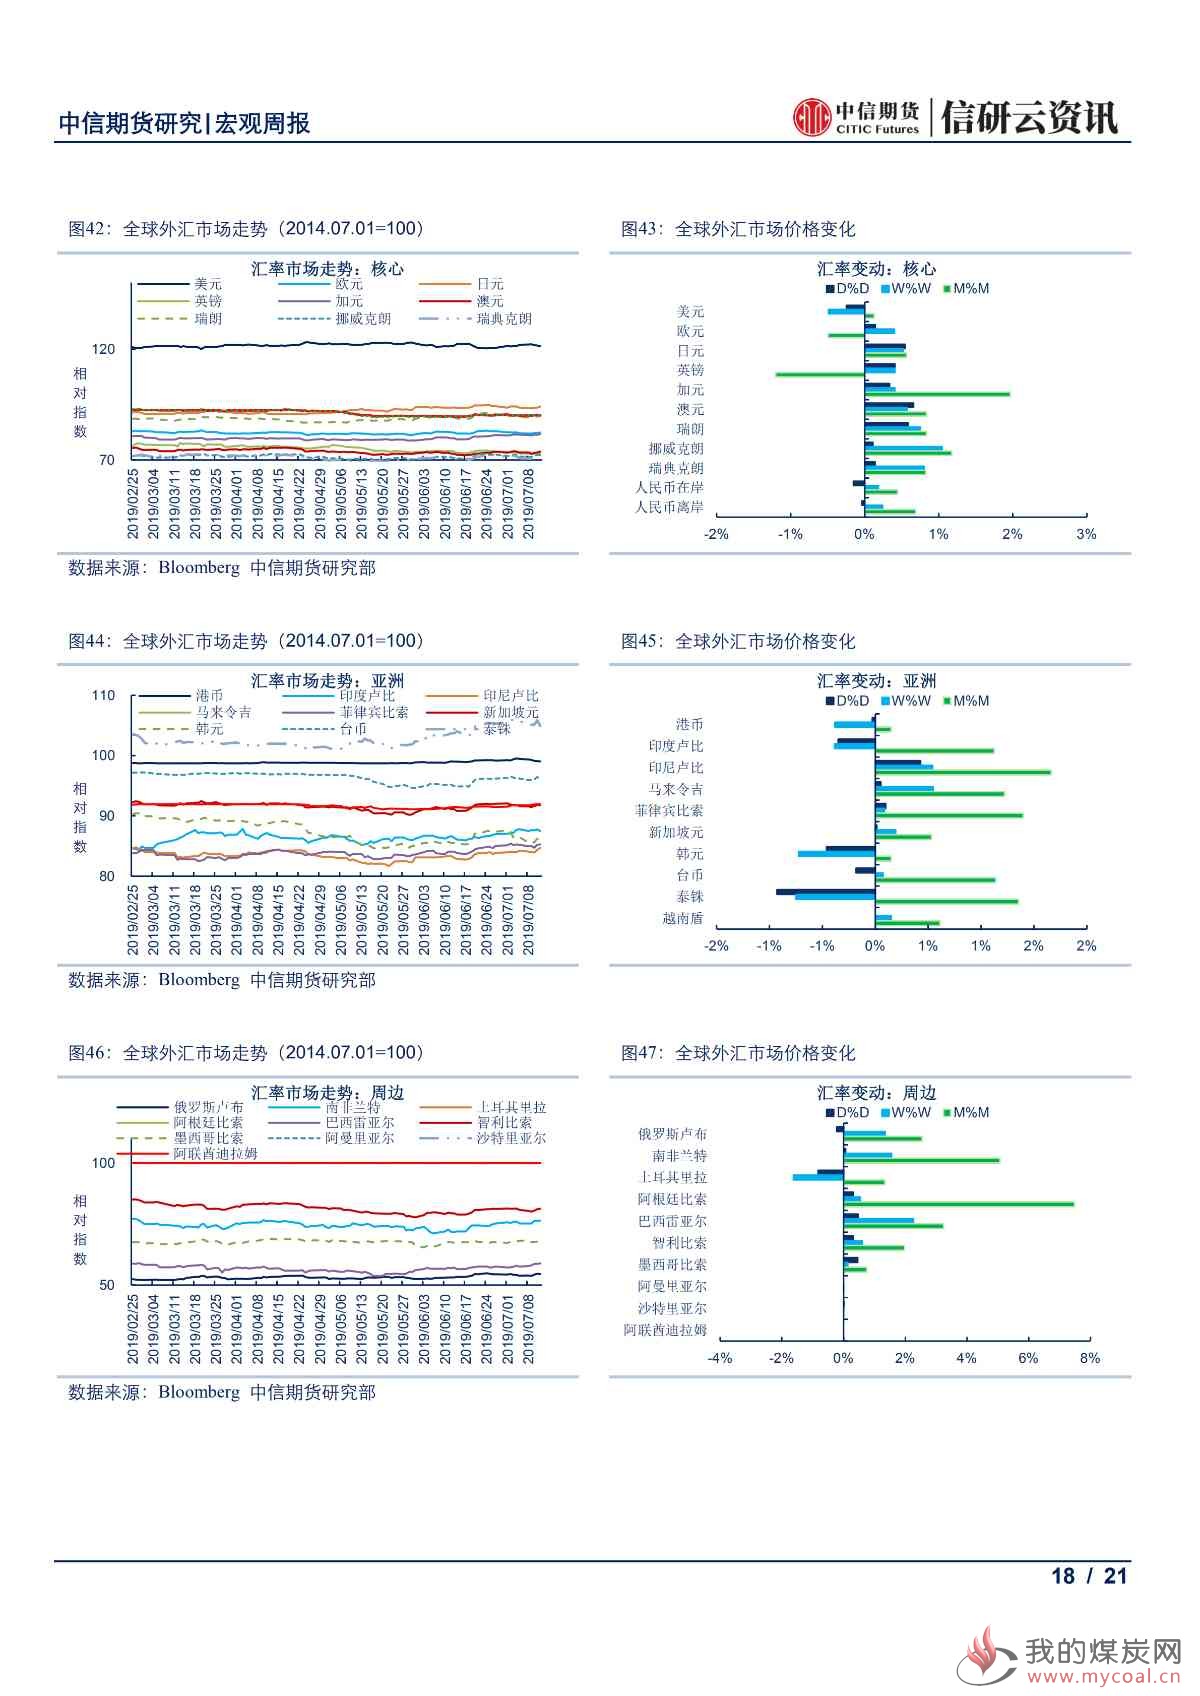 【中信期货宏观】全球央行鸽派倾向更甚 本周市场静待中国6月经济数据出炉——周报20190715_17